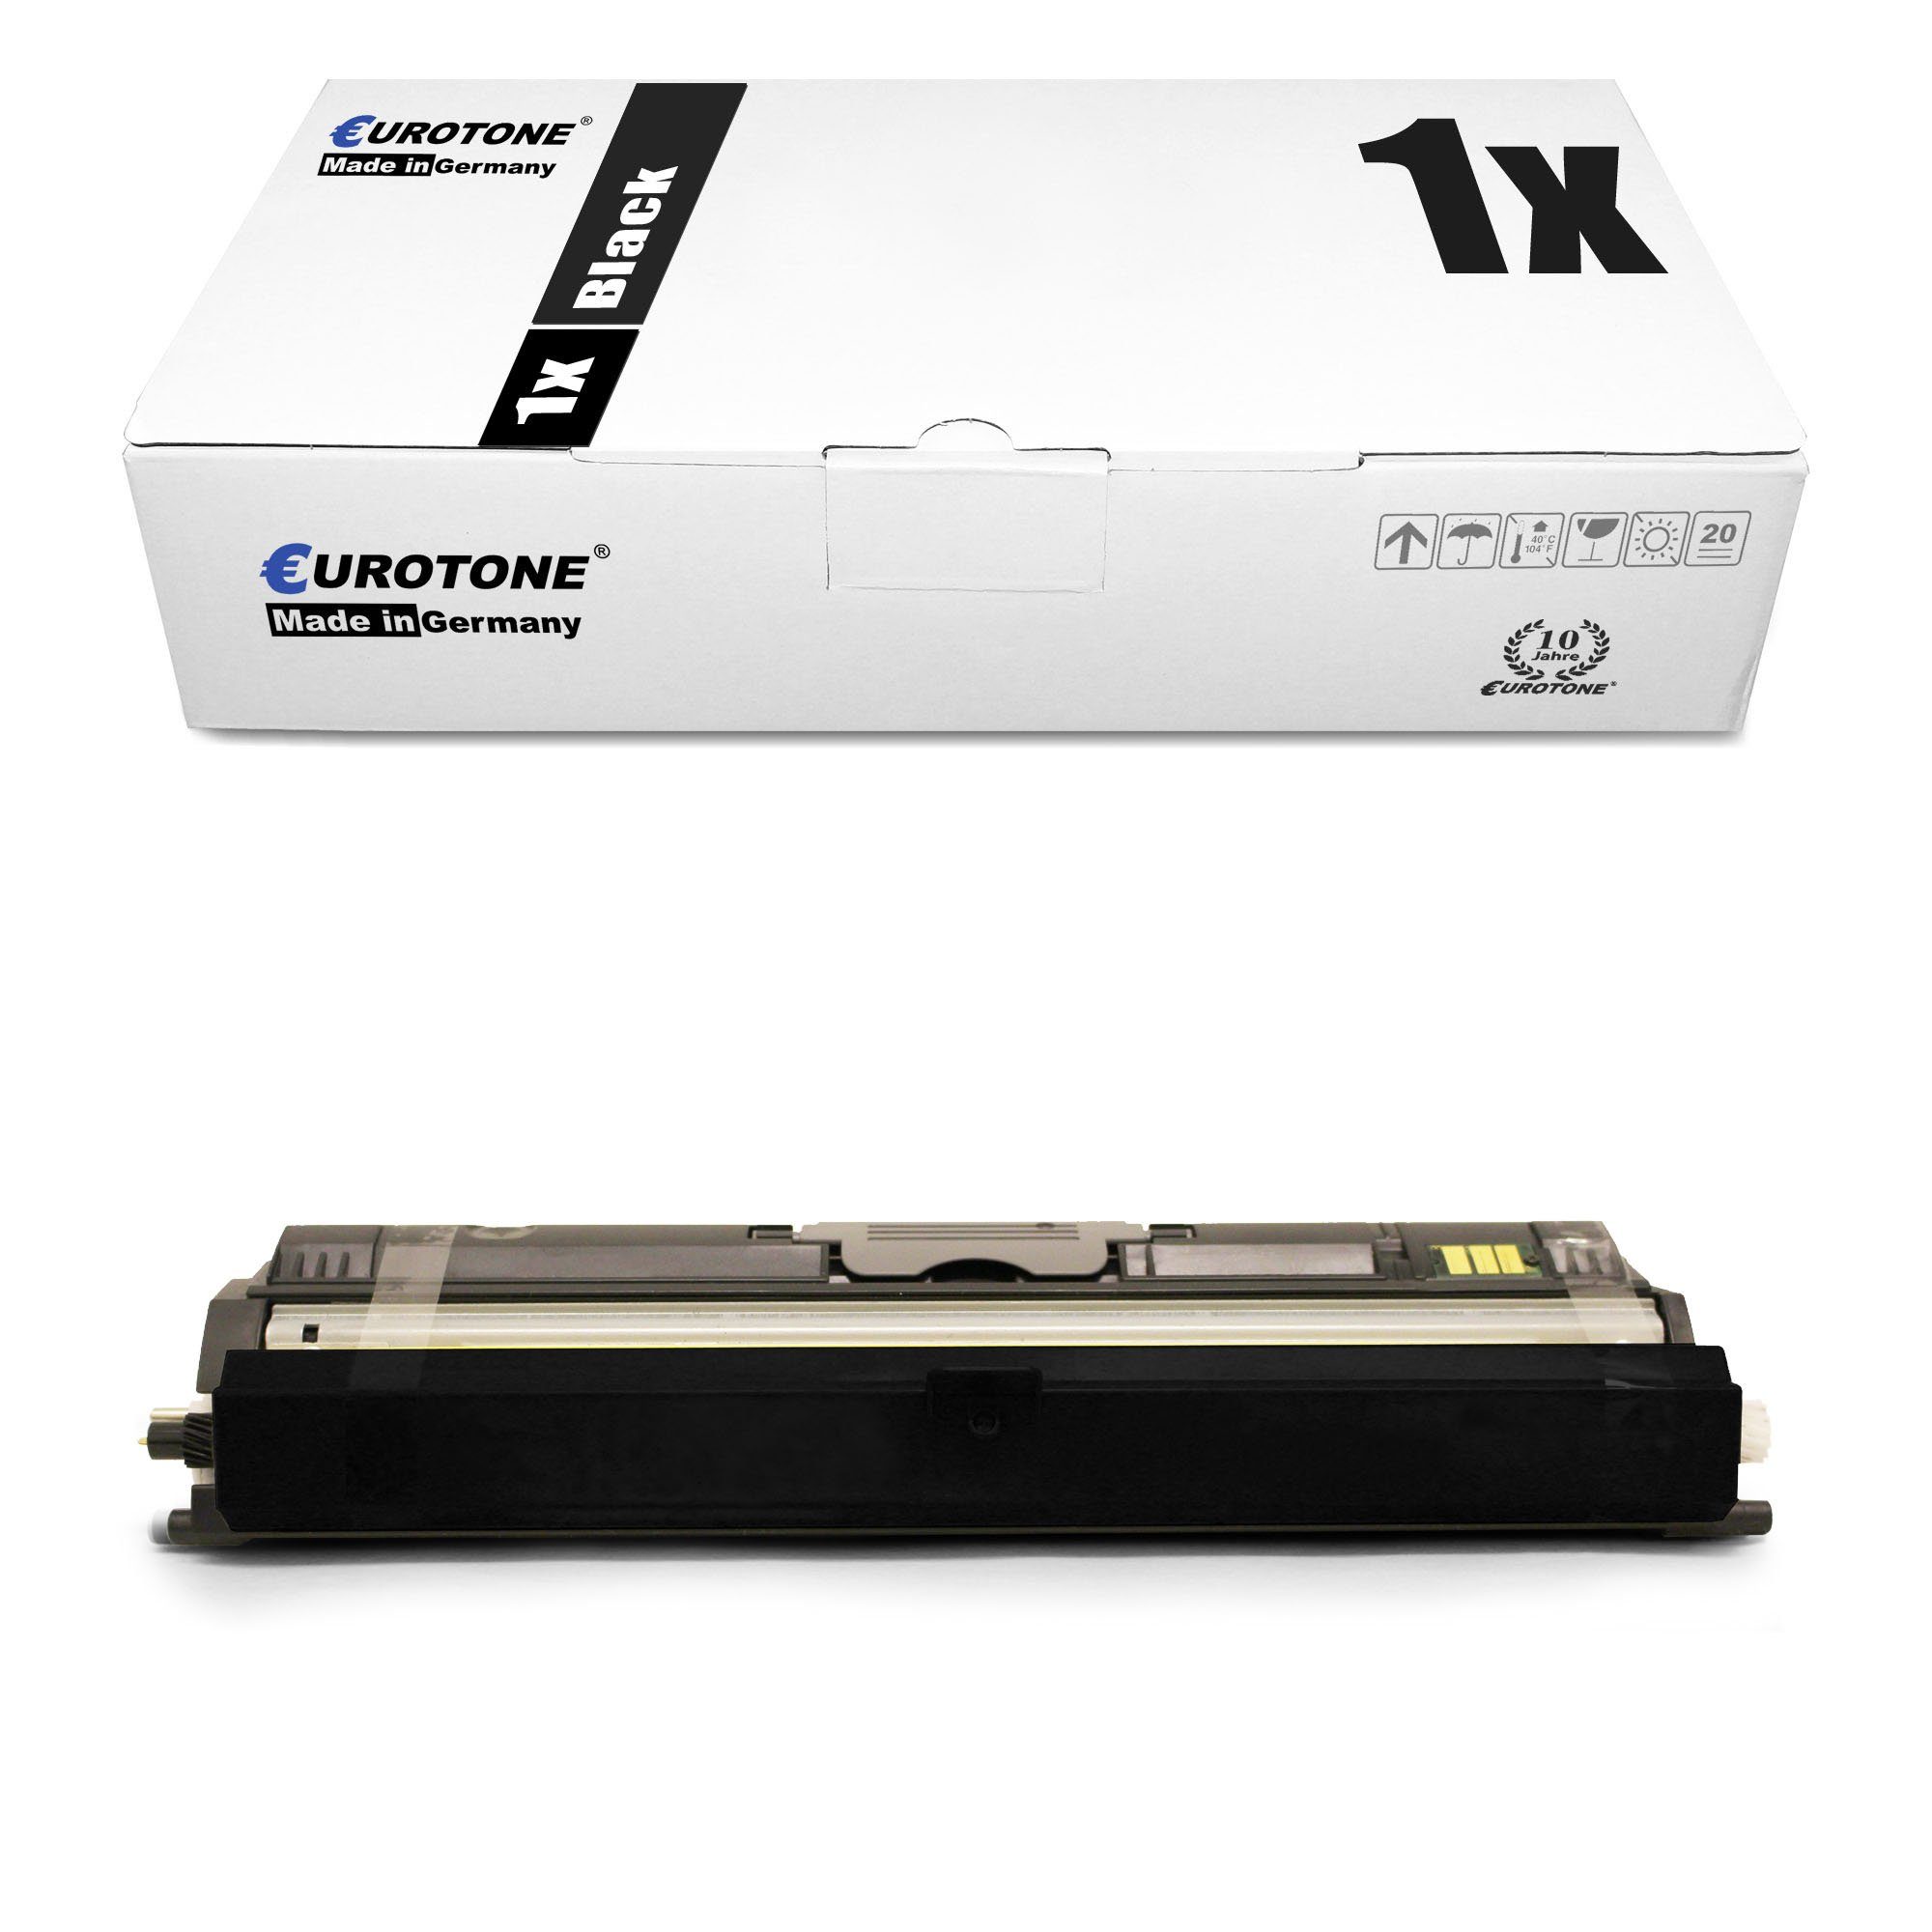 Eurotone Tonerkartusche Toner ersetzt Xerox 106R01469 Black | Tonerpatronen